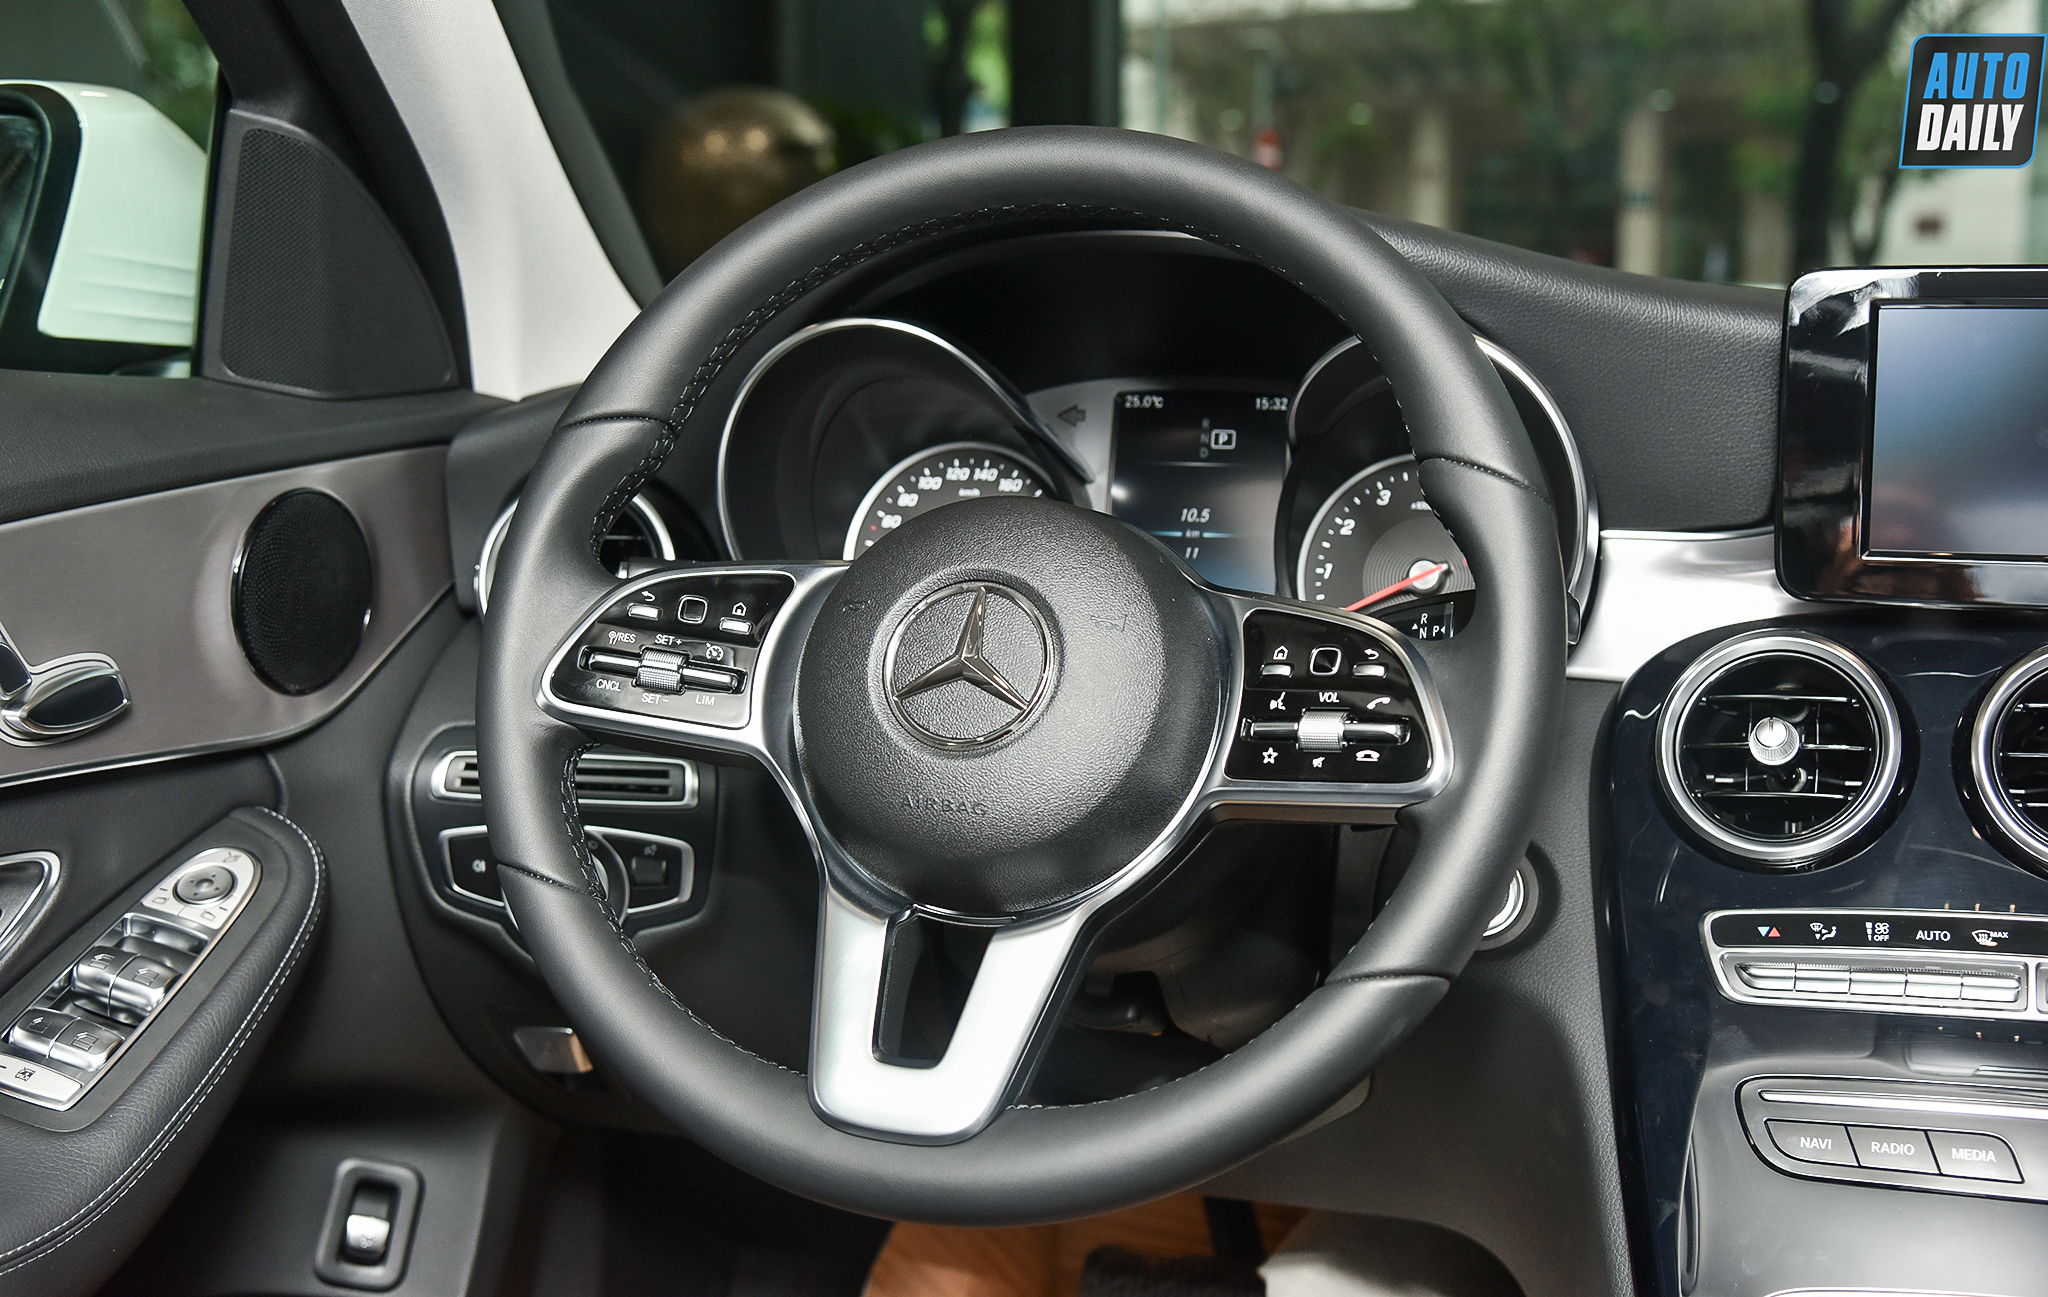 Mercedes-Benz C180 AMG mới tại Việt Nam có giá 1,499 tỷ đồng Chi tiết Mercedes-Benz C180 2020 giá 1,399 tỷ tại đại lý 13.jpg